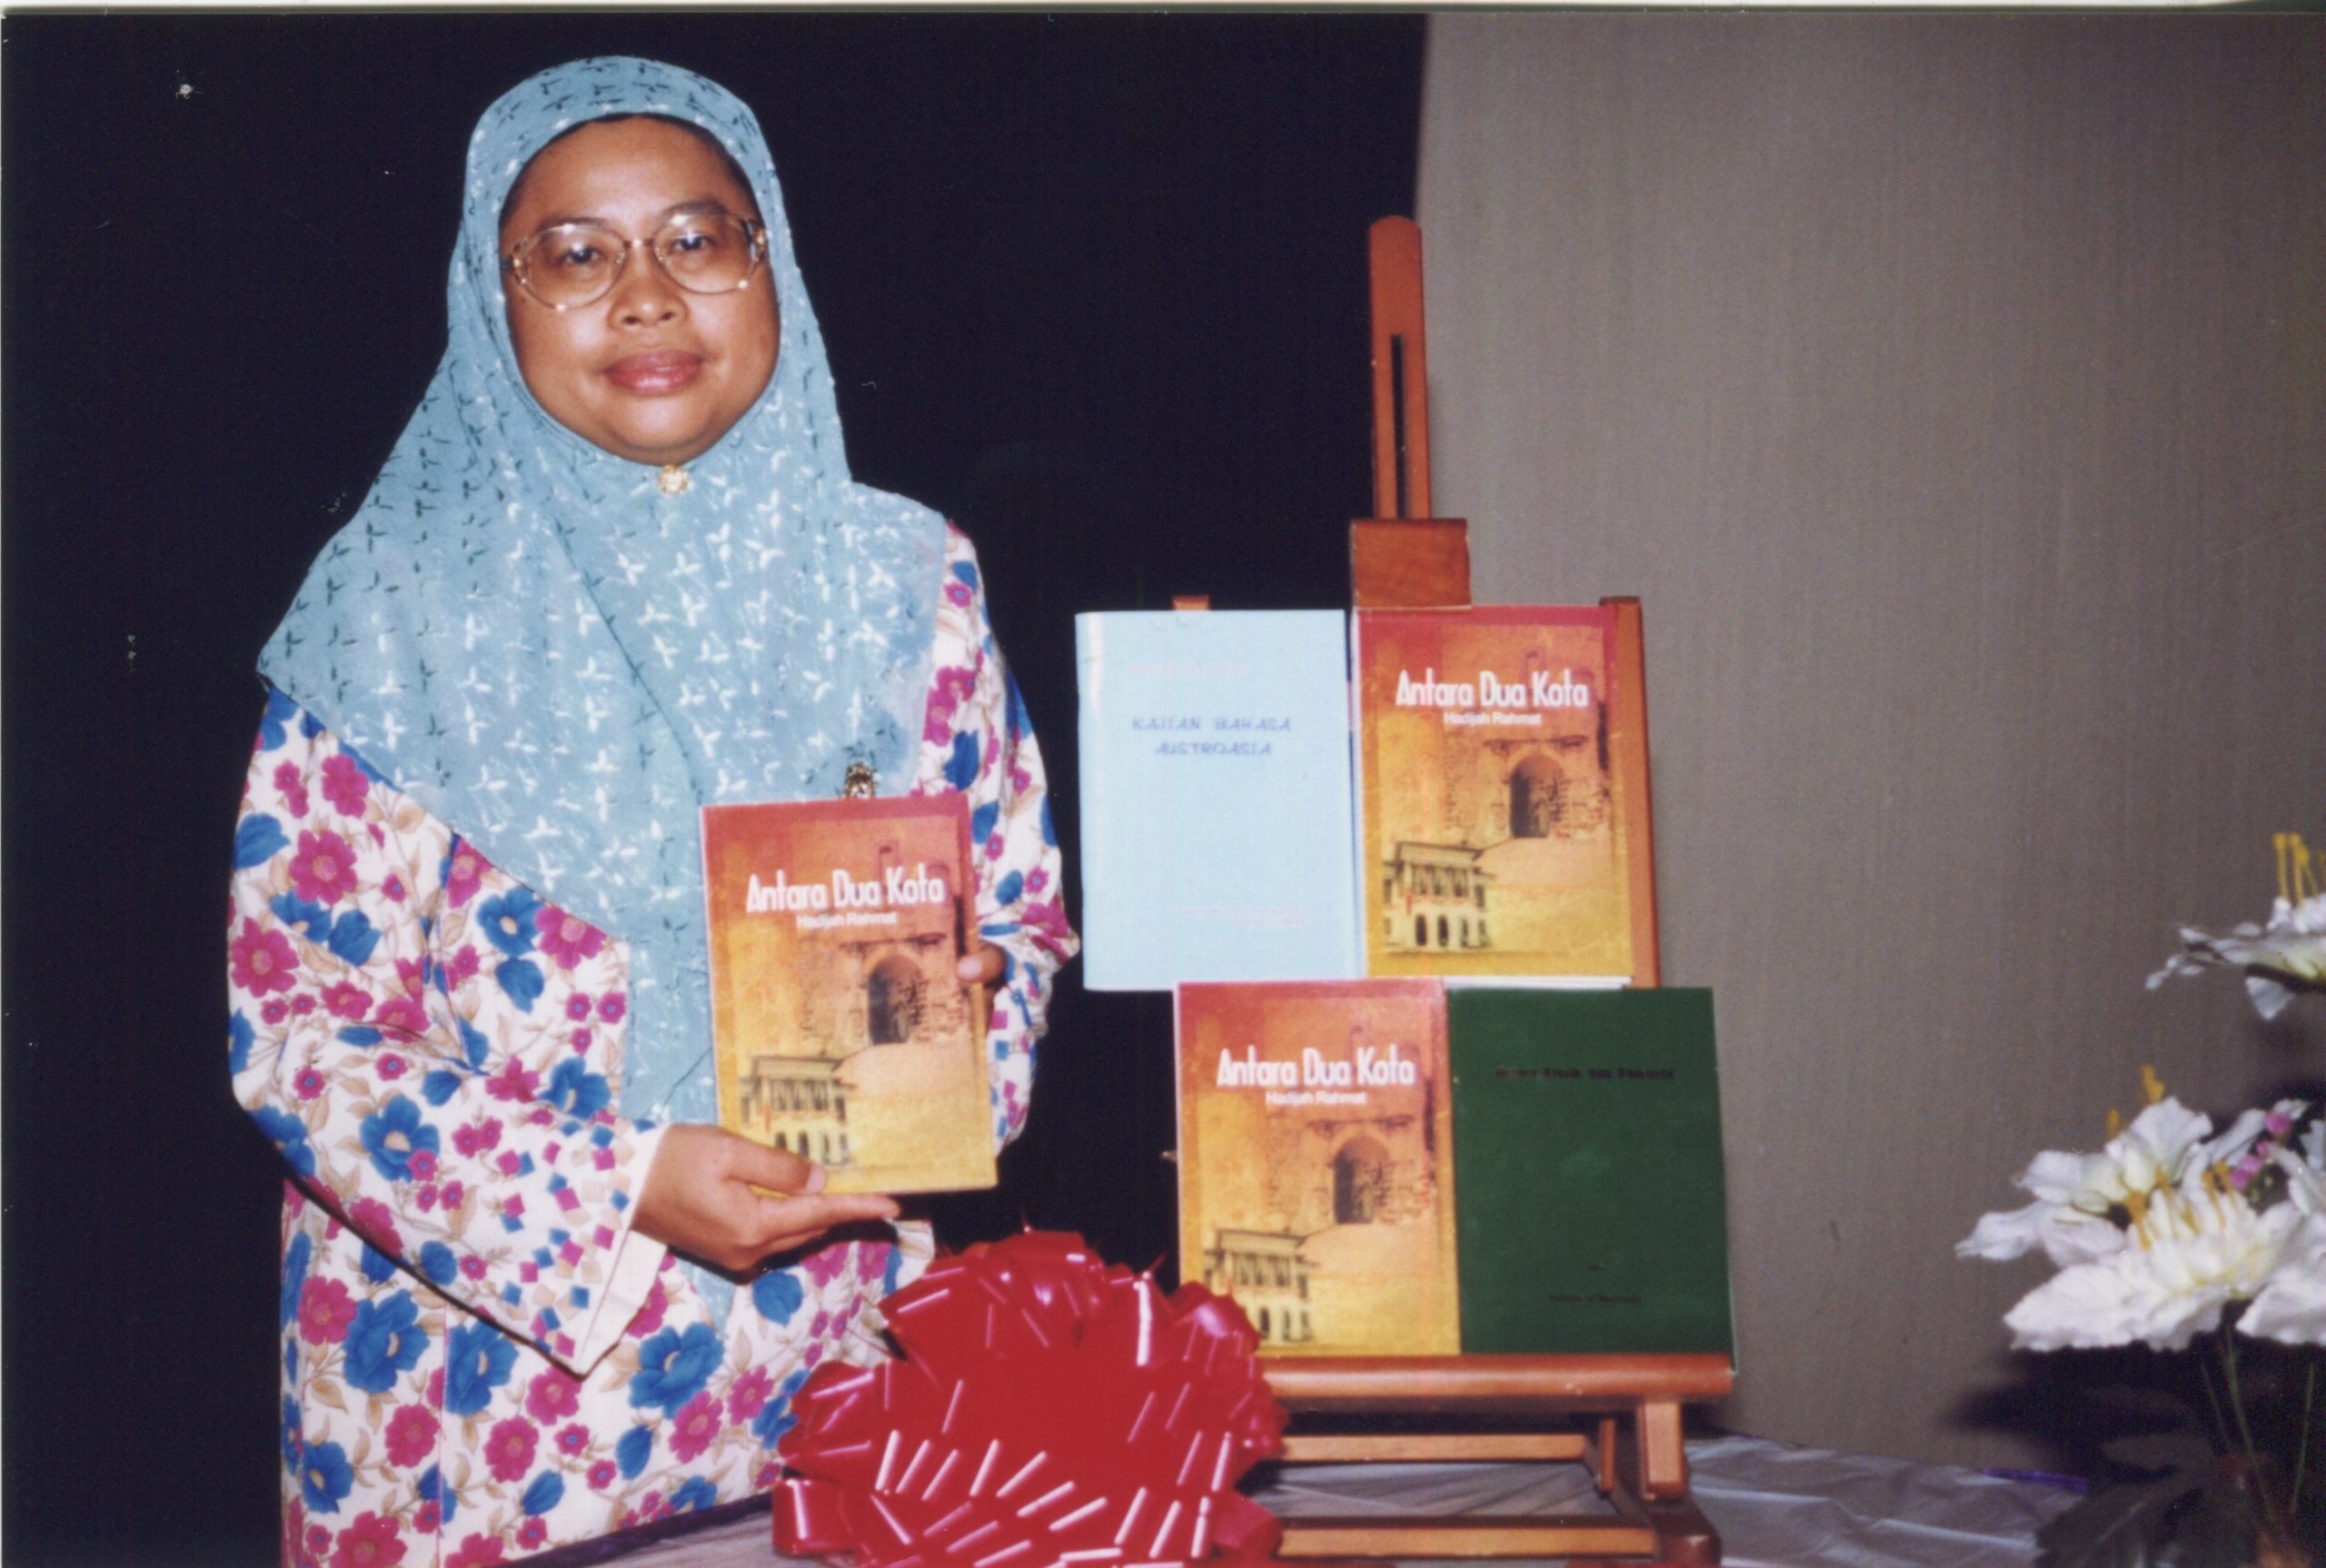 Hadijah Rahmat at the launch of her book Antara Dua Kota held at National Institute of Education, Bukit Timah Campus, (1999)